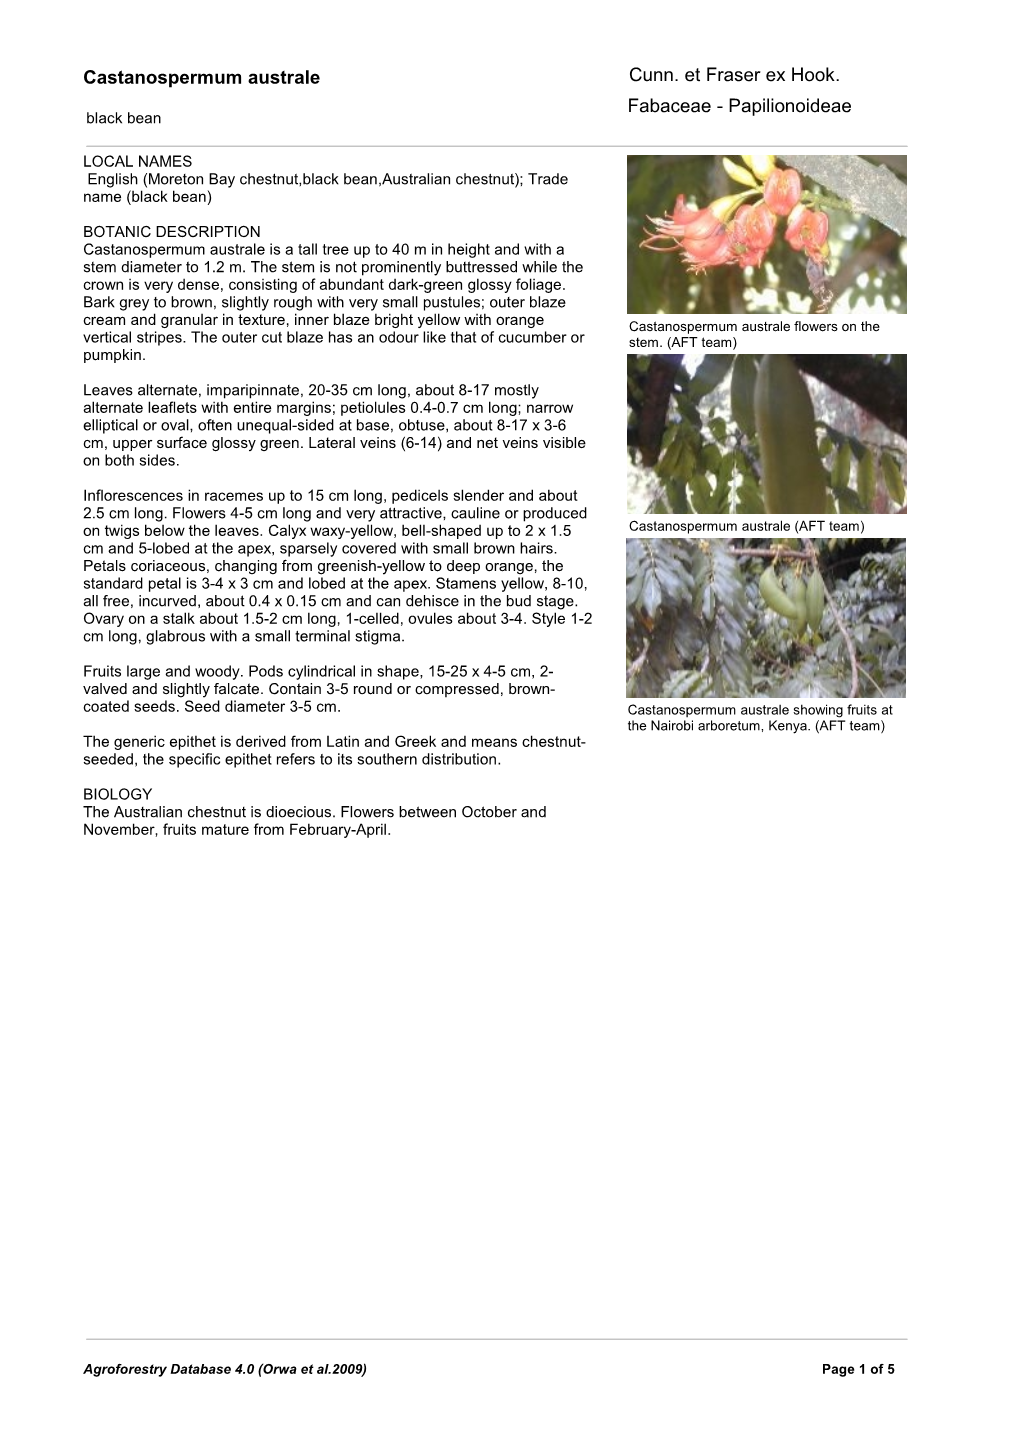 Castanospermum Australe Fabaceae